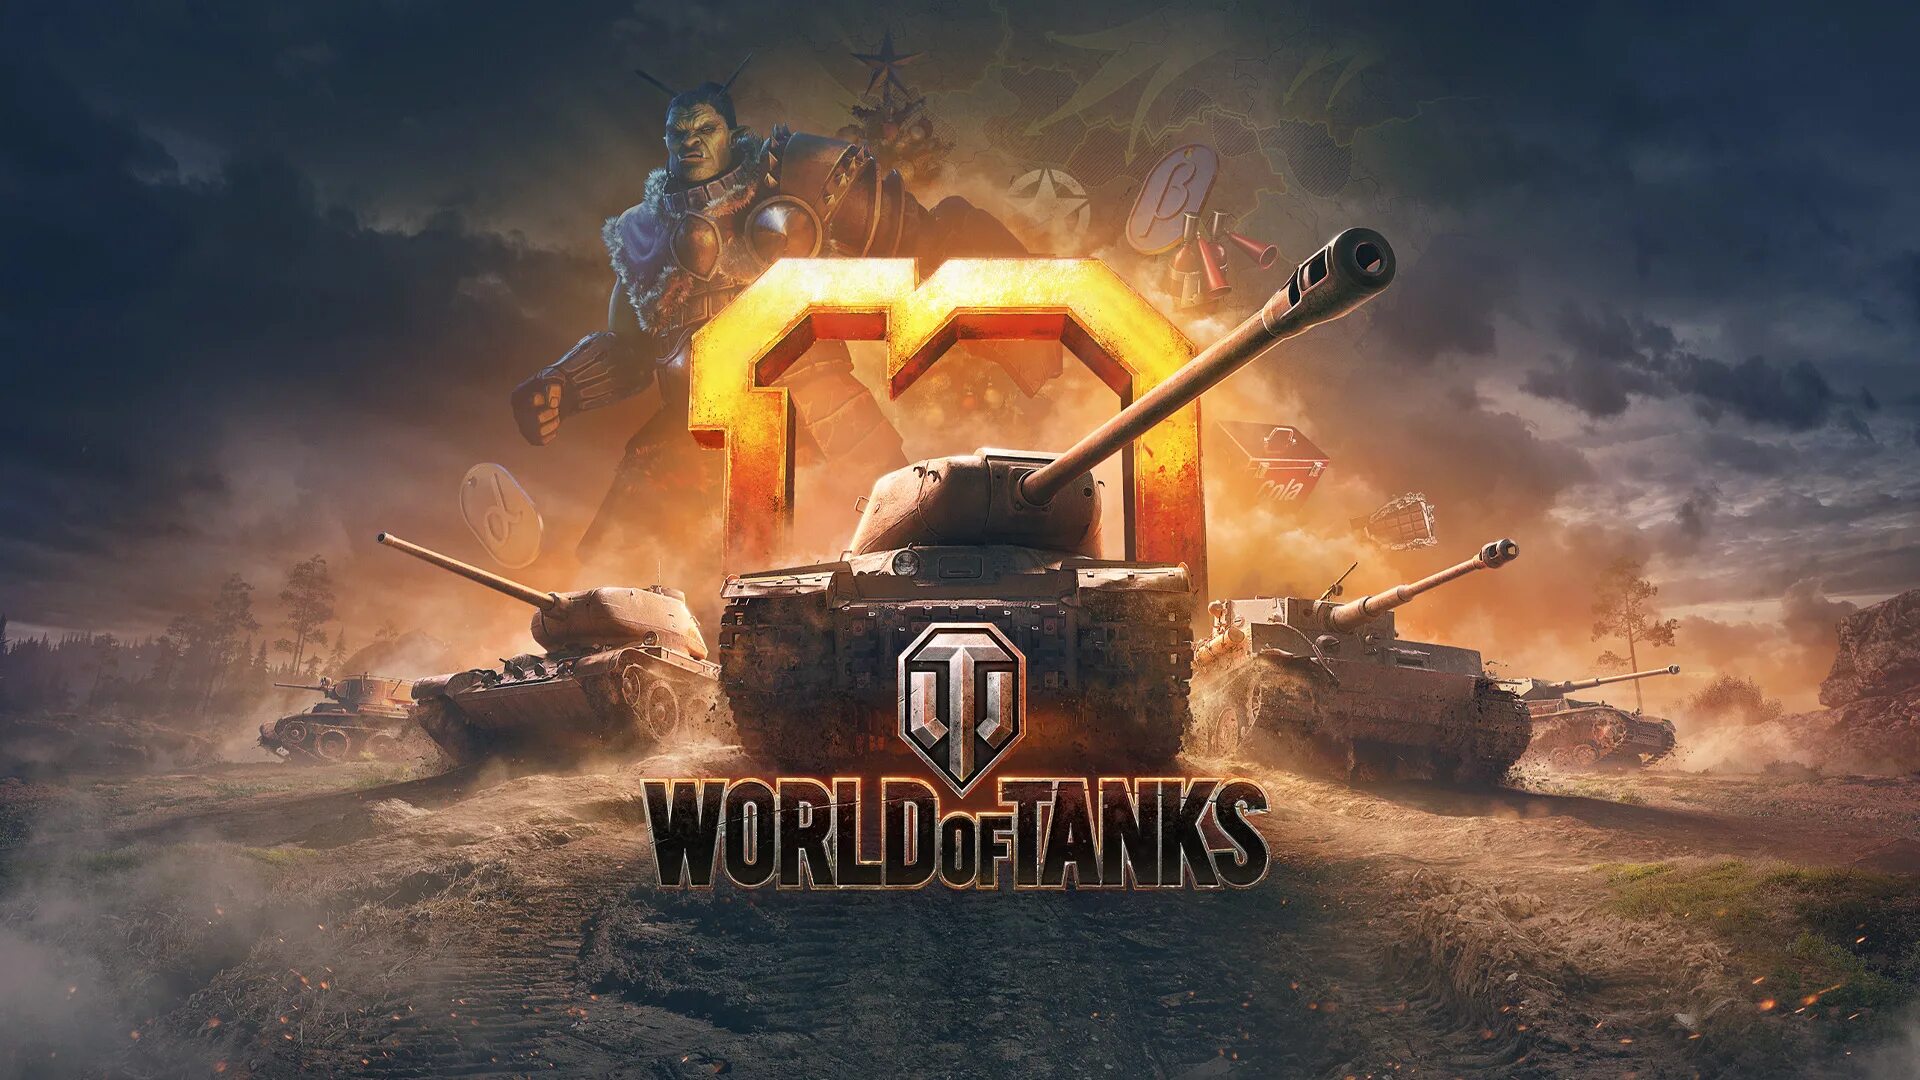 Игра World of Tanks. Танкифworld of Tanks. WOT картинки. World of Tanks обои на рабочий стол. Wot игровой